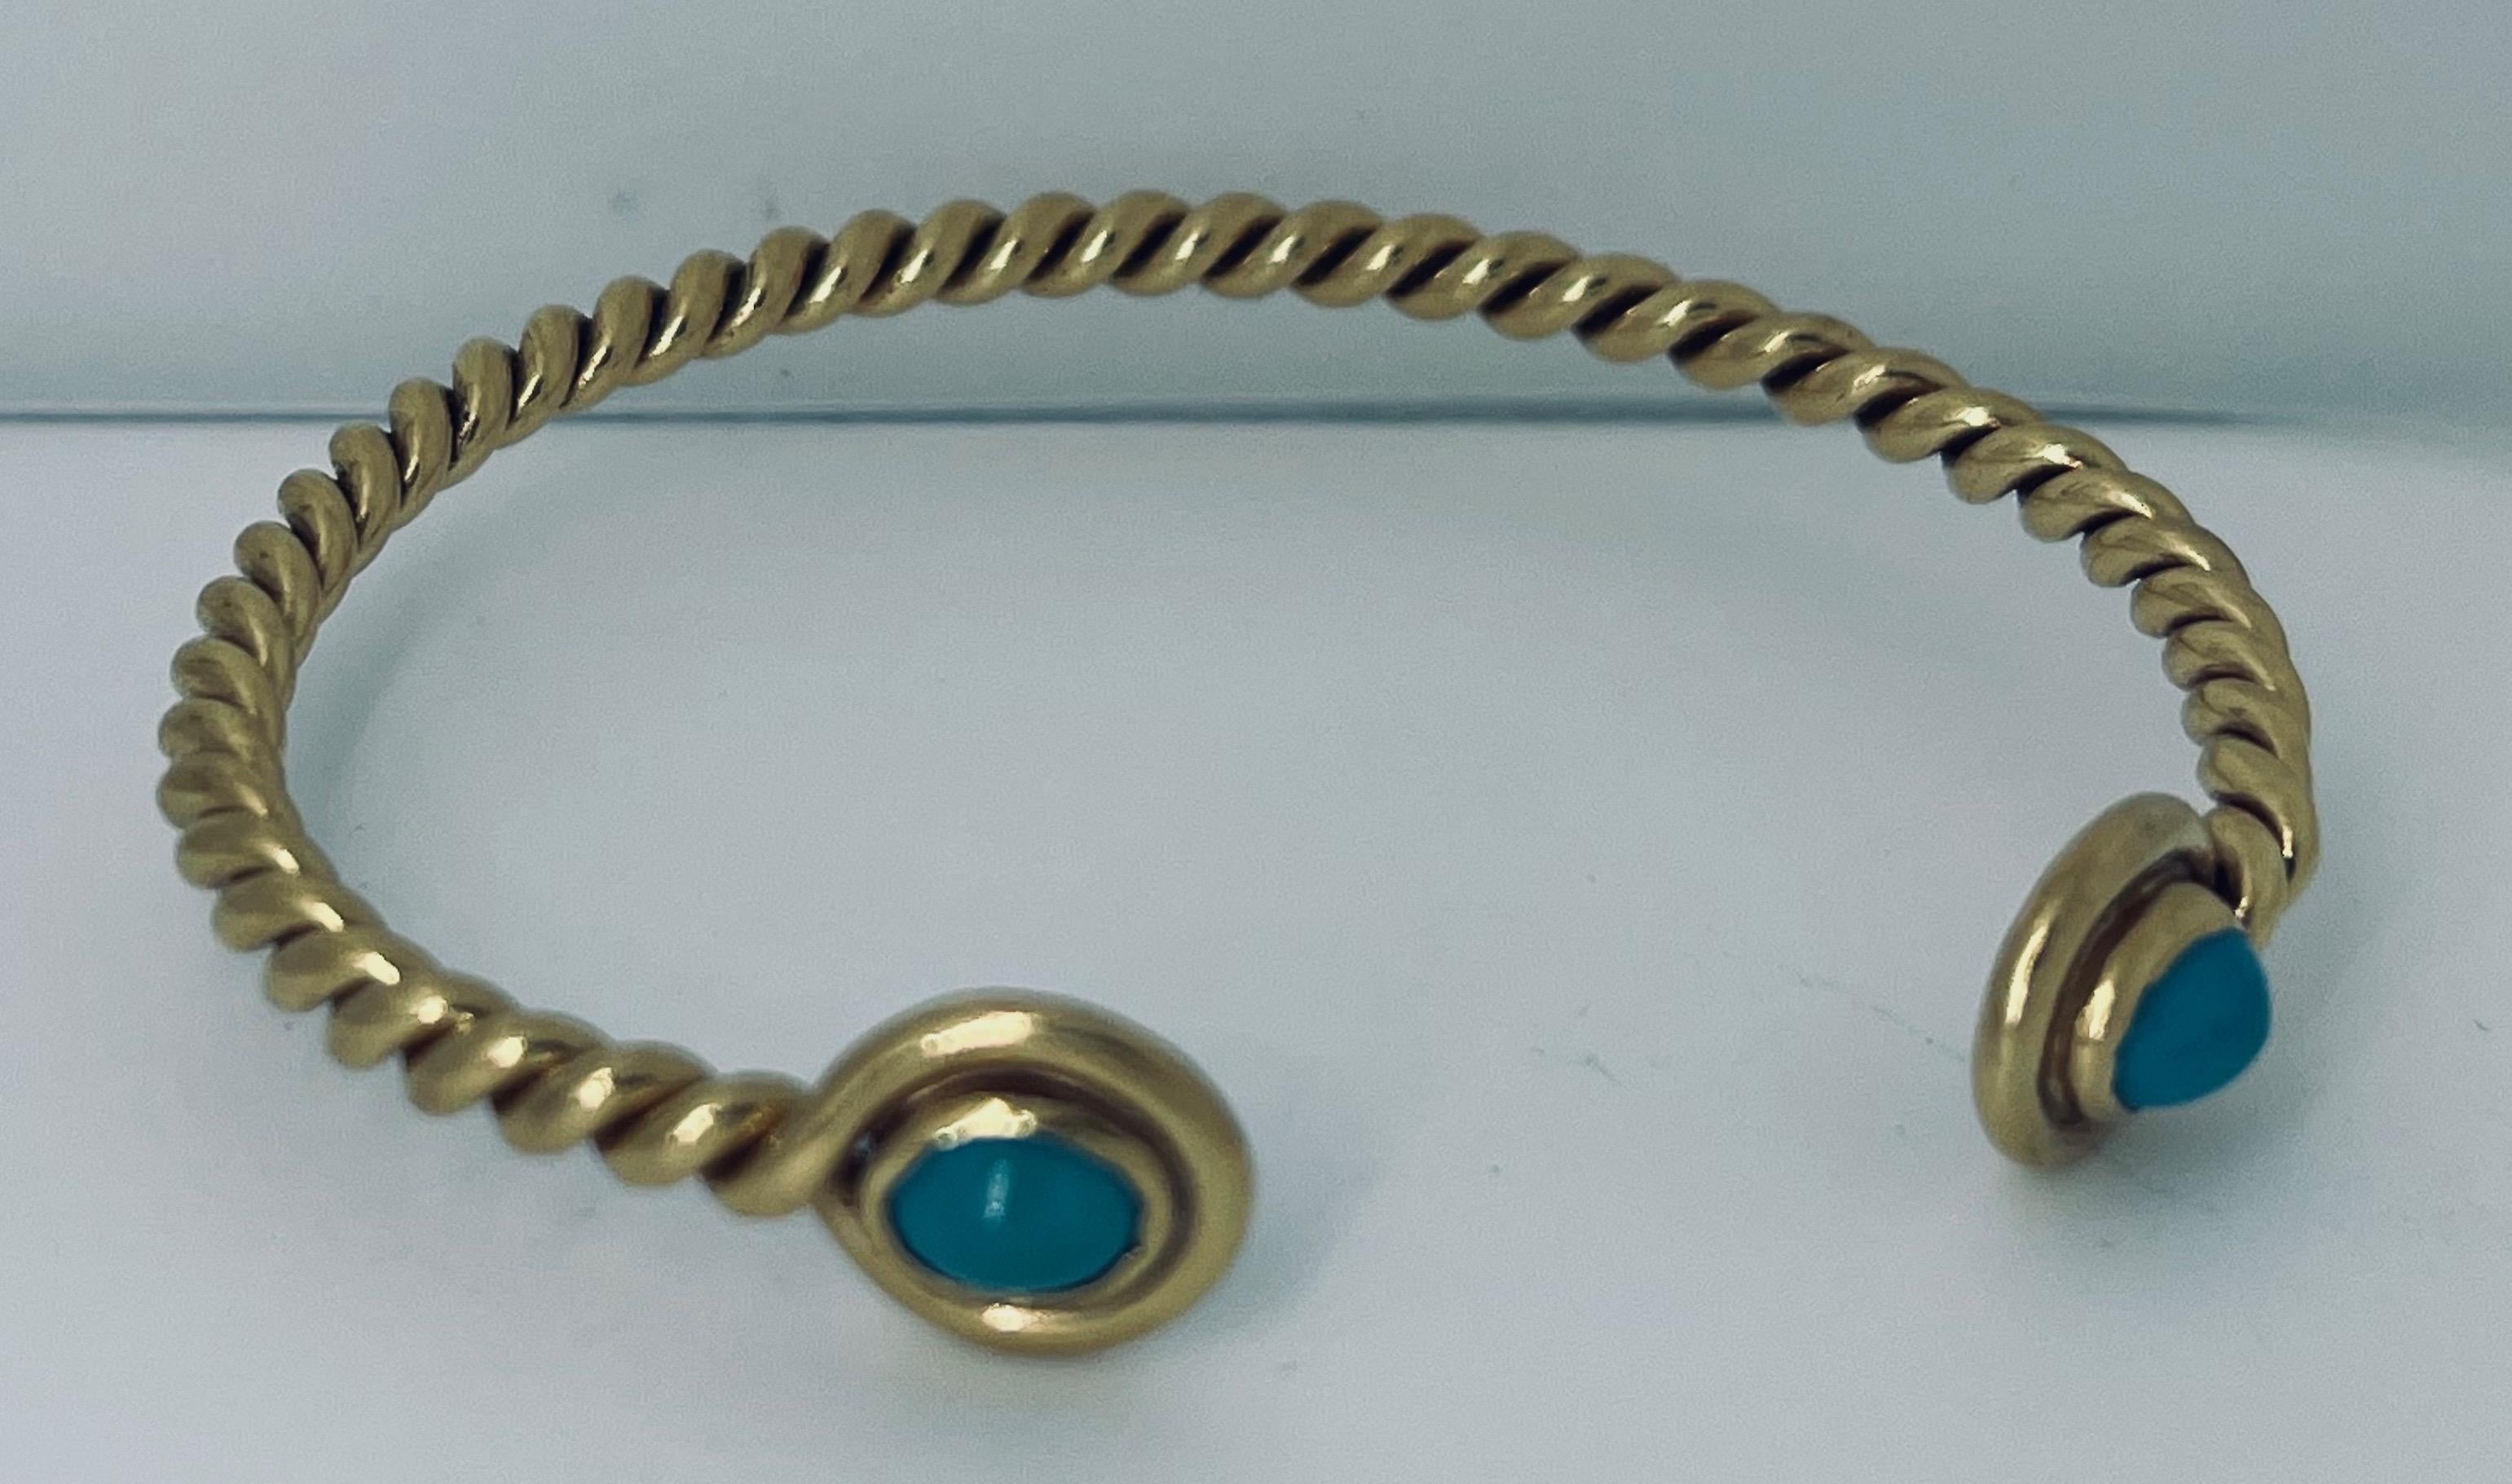 Bracelet en or 18ct et turquoise, circa 1970, 15.3 grammes, 5cm de diamètre, 16cm de circonférence du bracelet, 2cm d'ouverture, 3.5mm d'épaisseur de fil torsadé, pierres de 4.5mm x 6mm. Sans marque, fabriqué en Italie. Poinçon : 18ct. Prix :